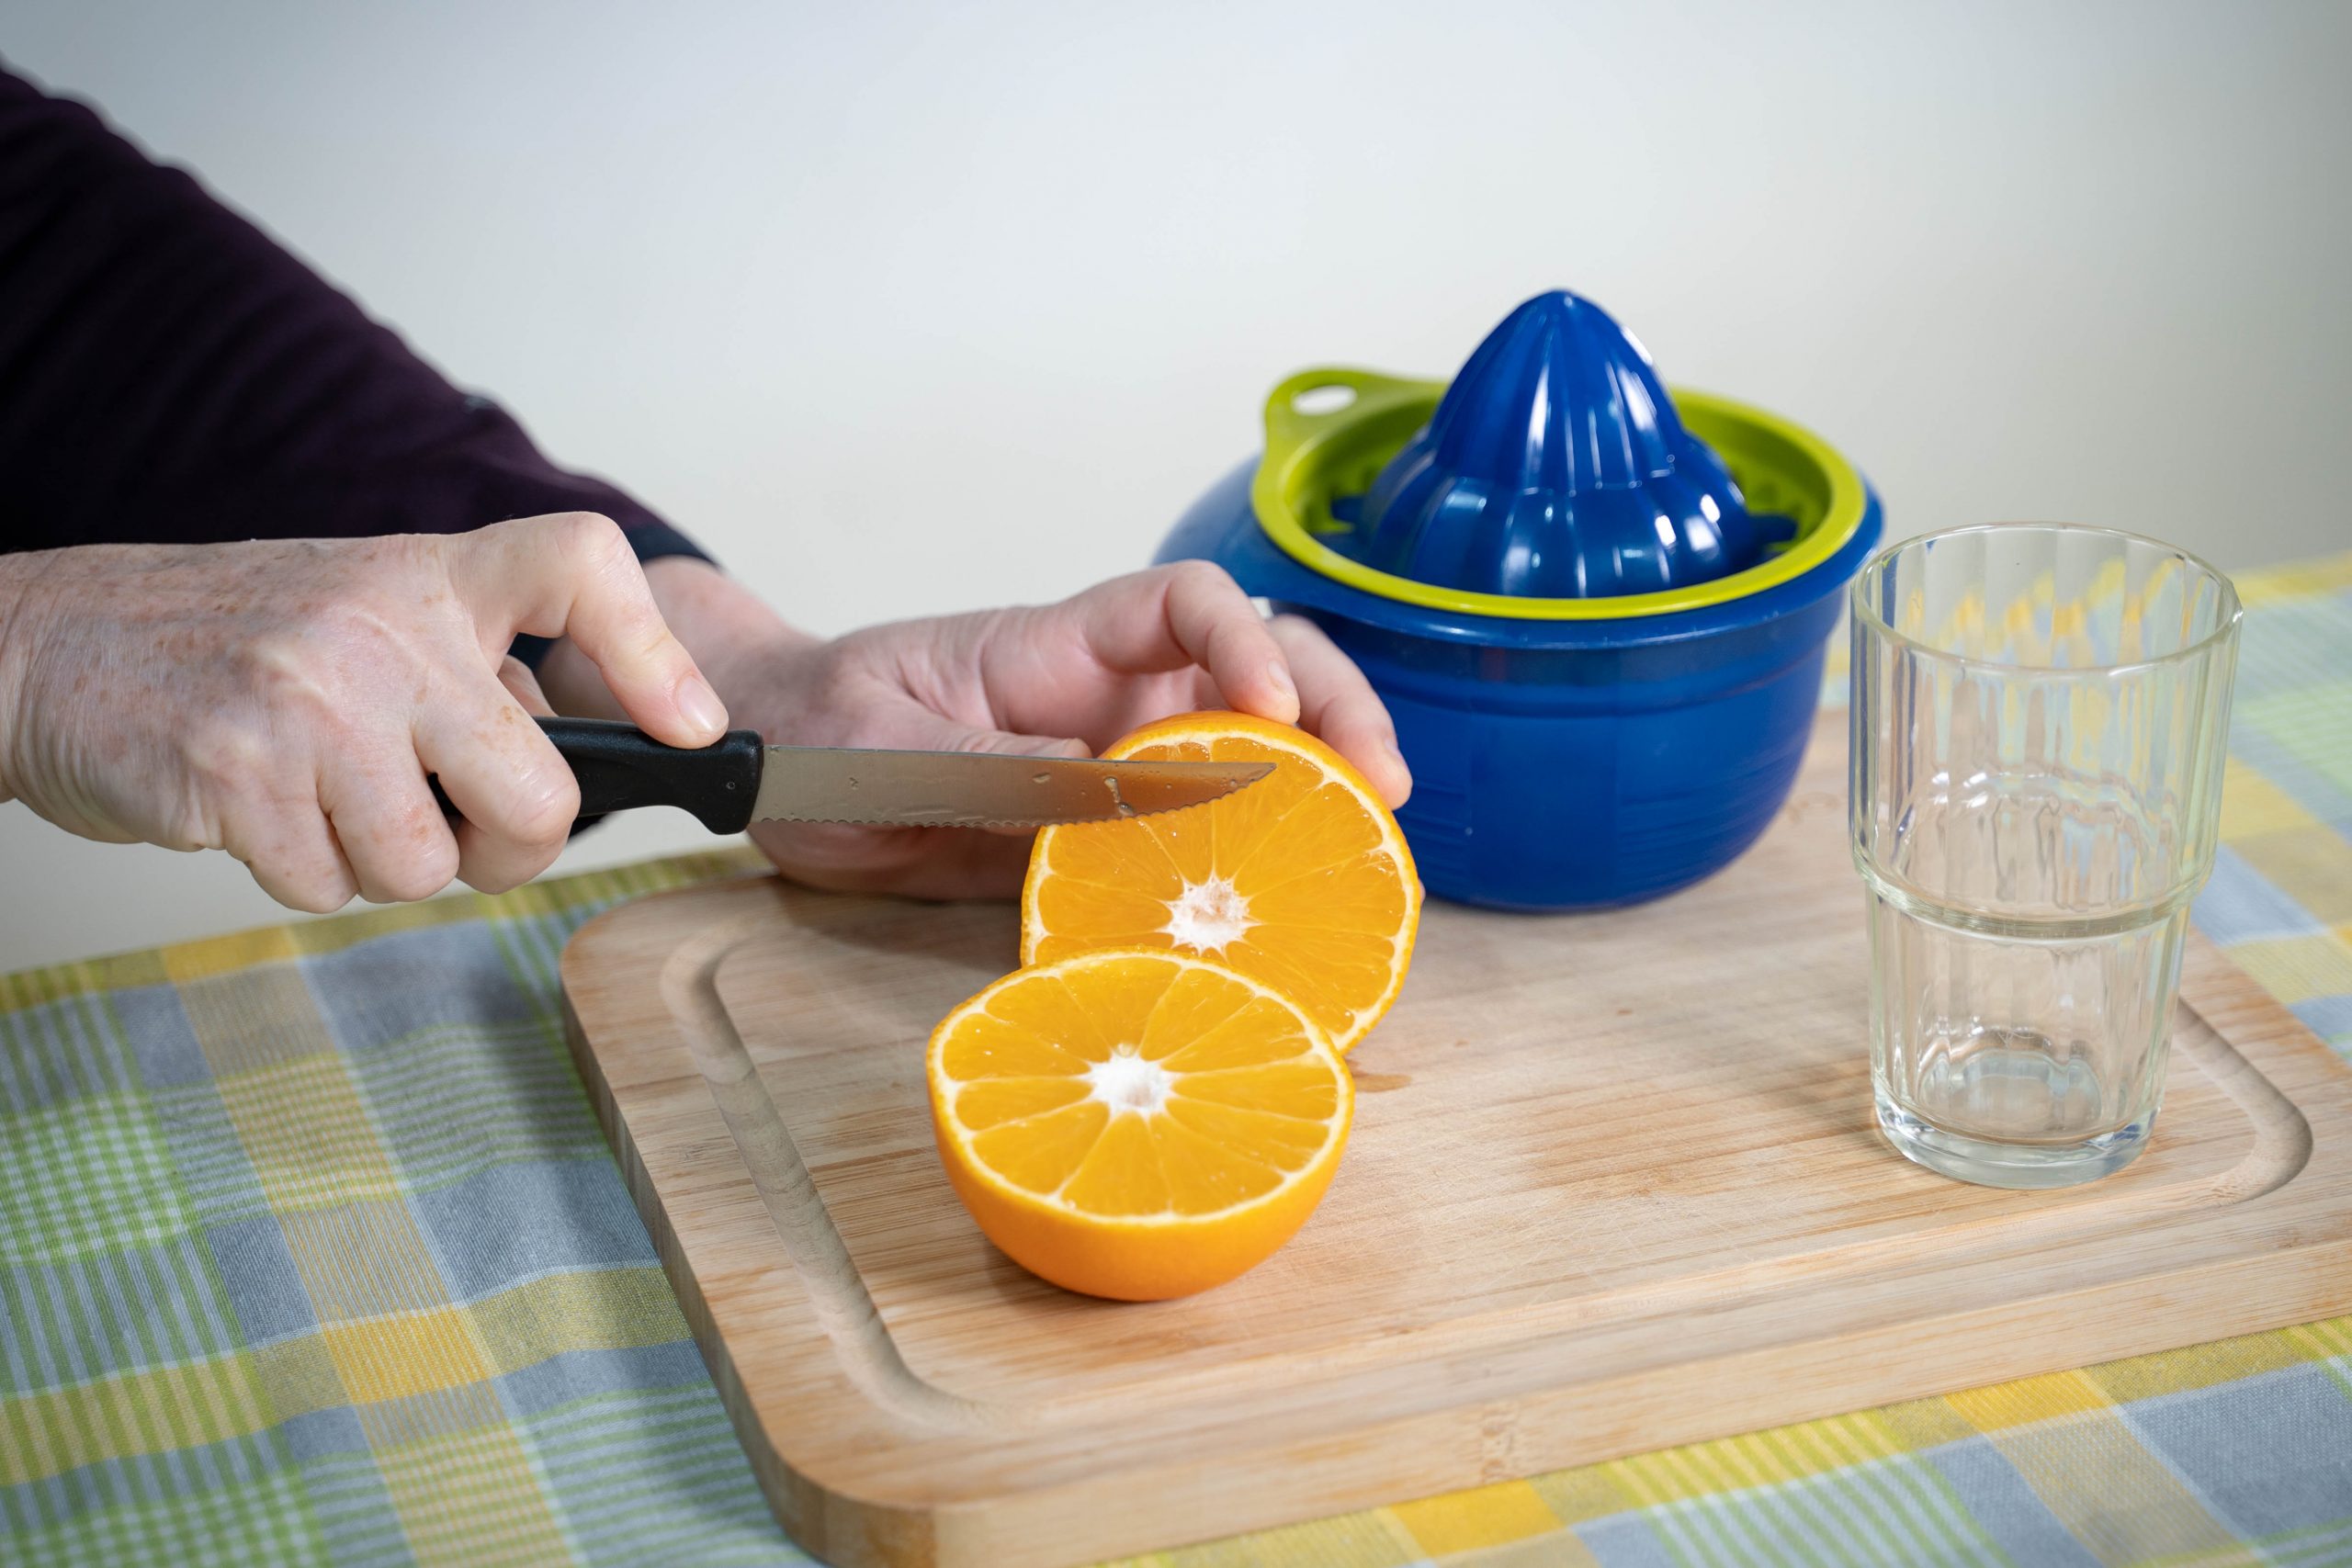 .ידיים חוצות תפוז לשני חצאים באמצעות סכין, על גבי קרש חיתוך שנמצא על שולחן. על גבי הקרש, מסחטת מיץ וכוס זכוכית ריקה